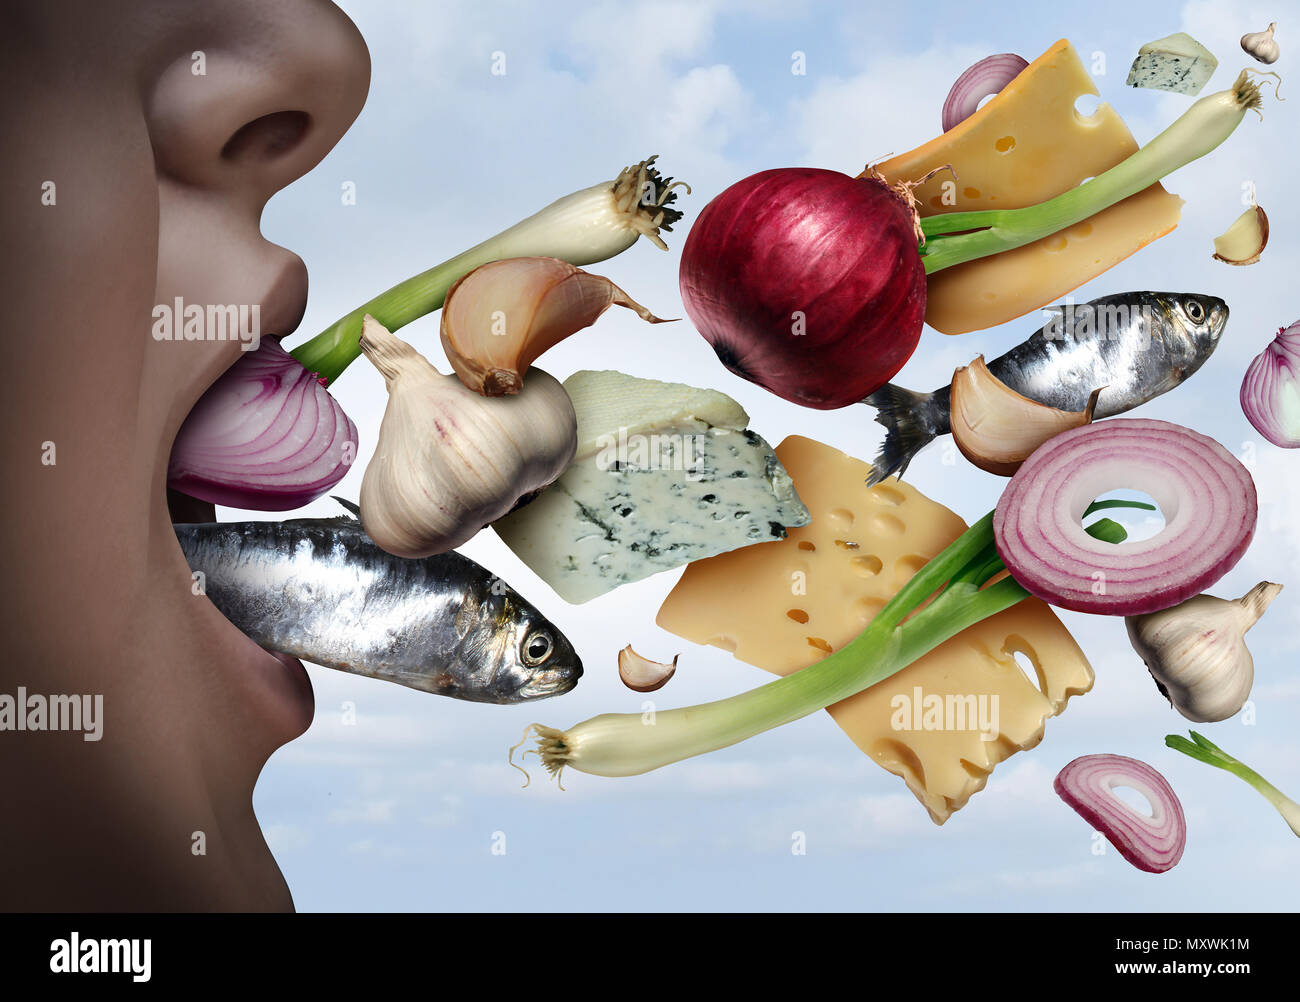 Schlechter Atem und Mundgeruch als unangenehmer Geruch aus dem Mund wie der Geruch von Knoblauch Zwiebeln Fisch oder Käse in einer 3D-Darstellung. Stockfoto